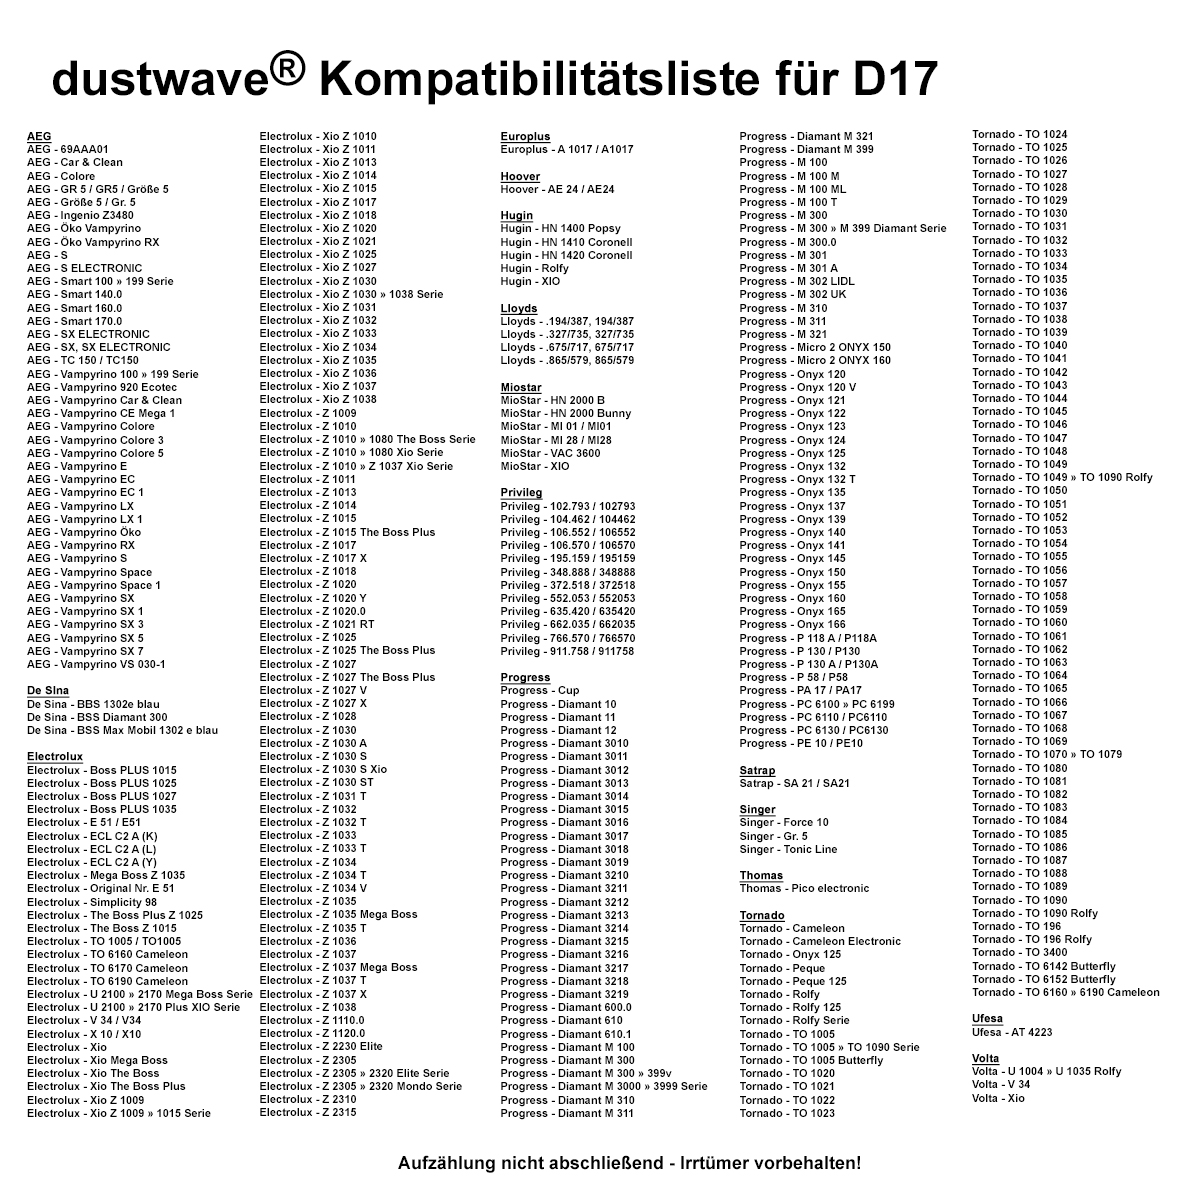 Dustwave® 10 Staubsaugerbeutel für AEG GR5 / Größe 5 - hocheffizient mit Hygieneverschluss - Made in Germany